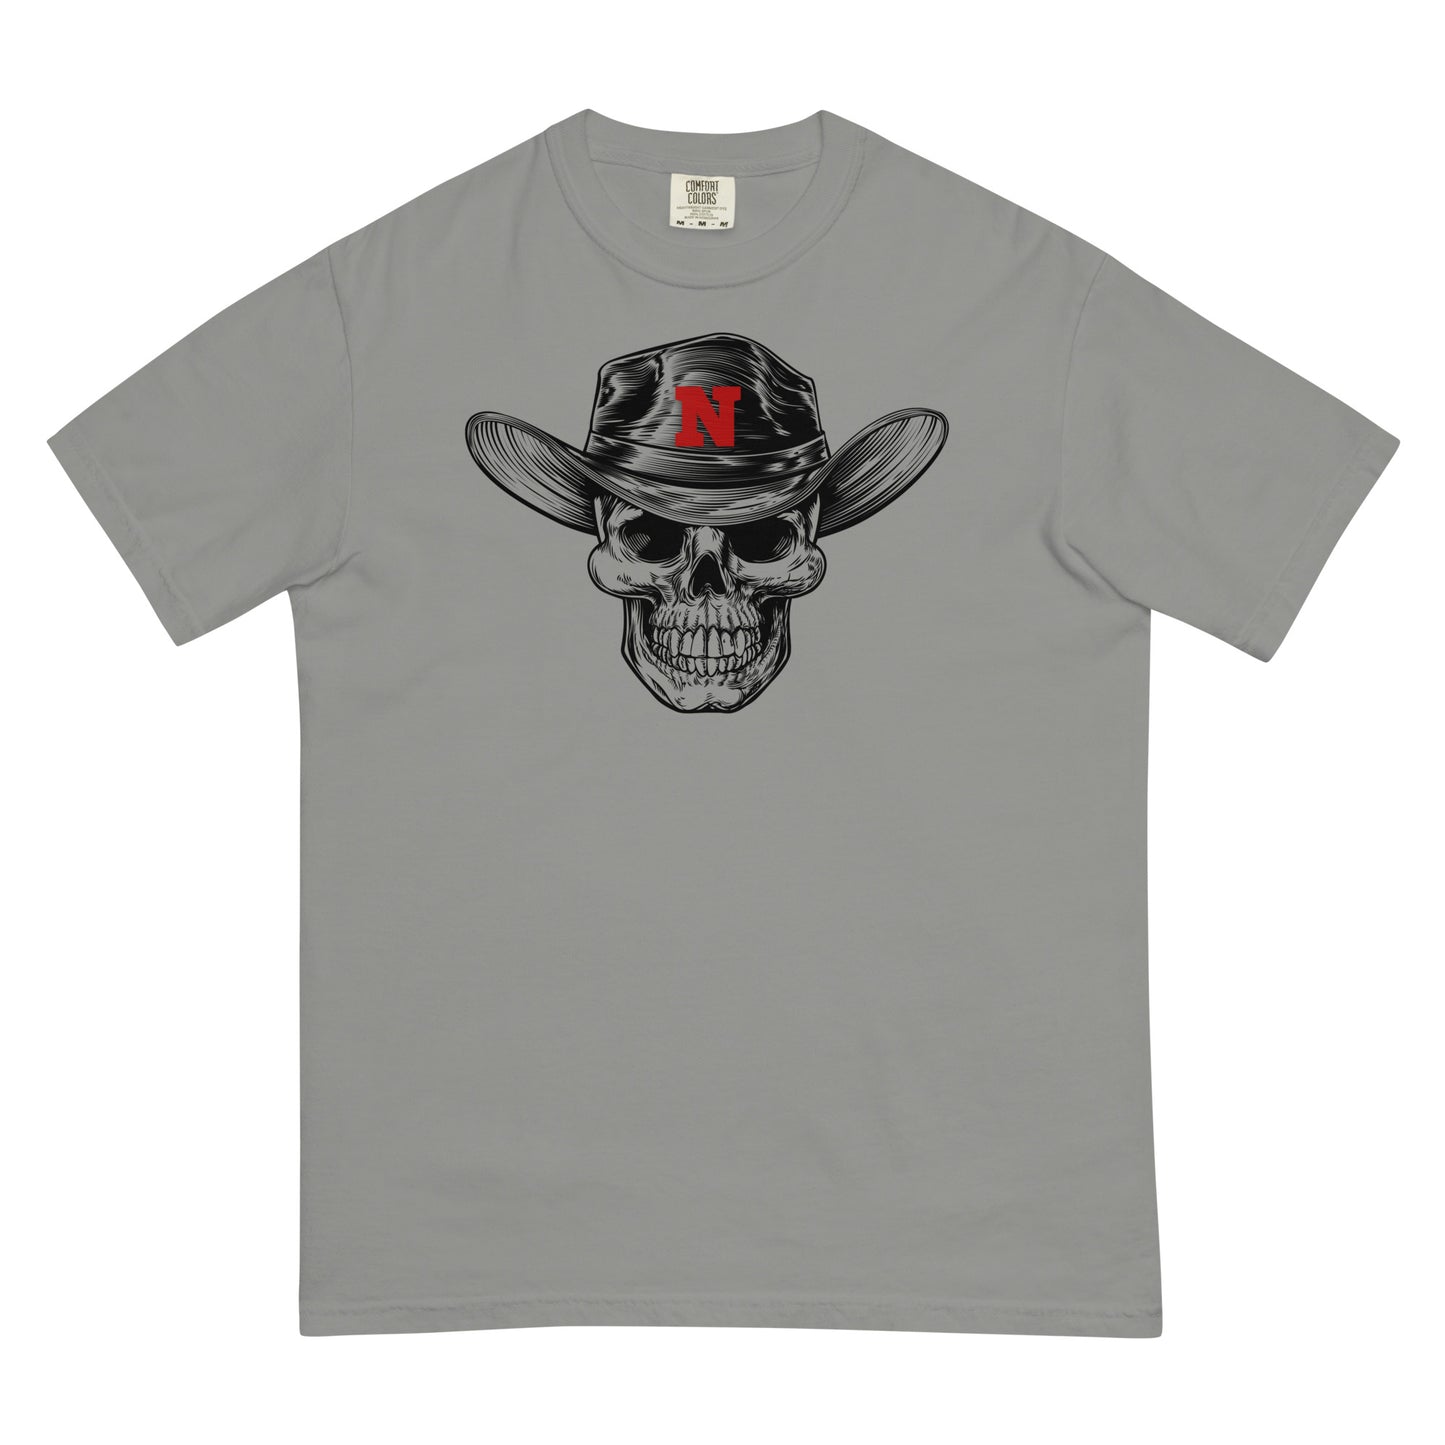 'Skers Cowboy T-shirt